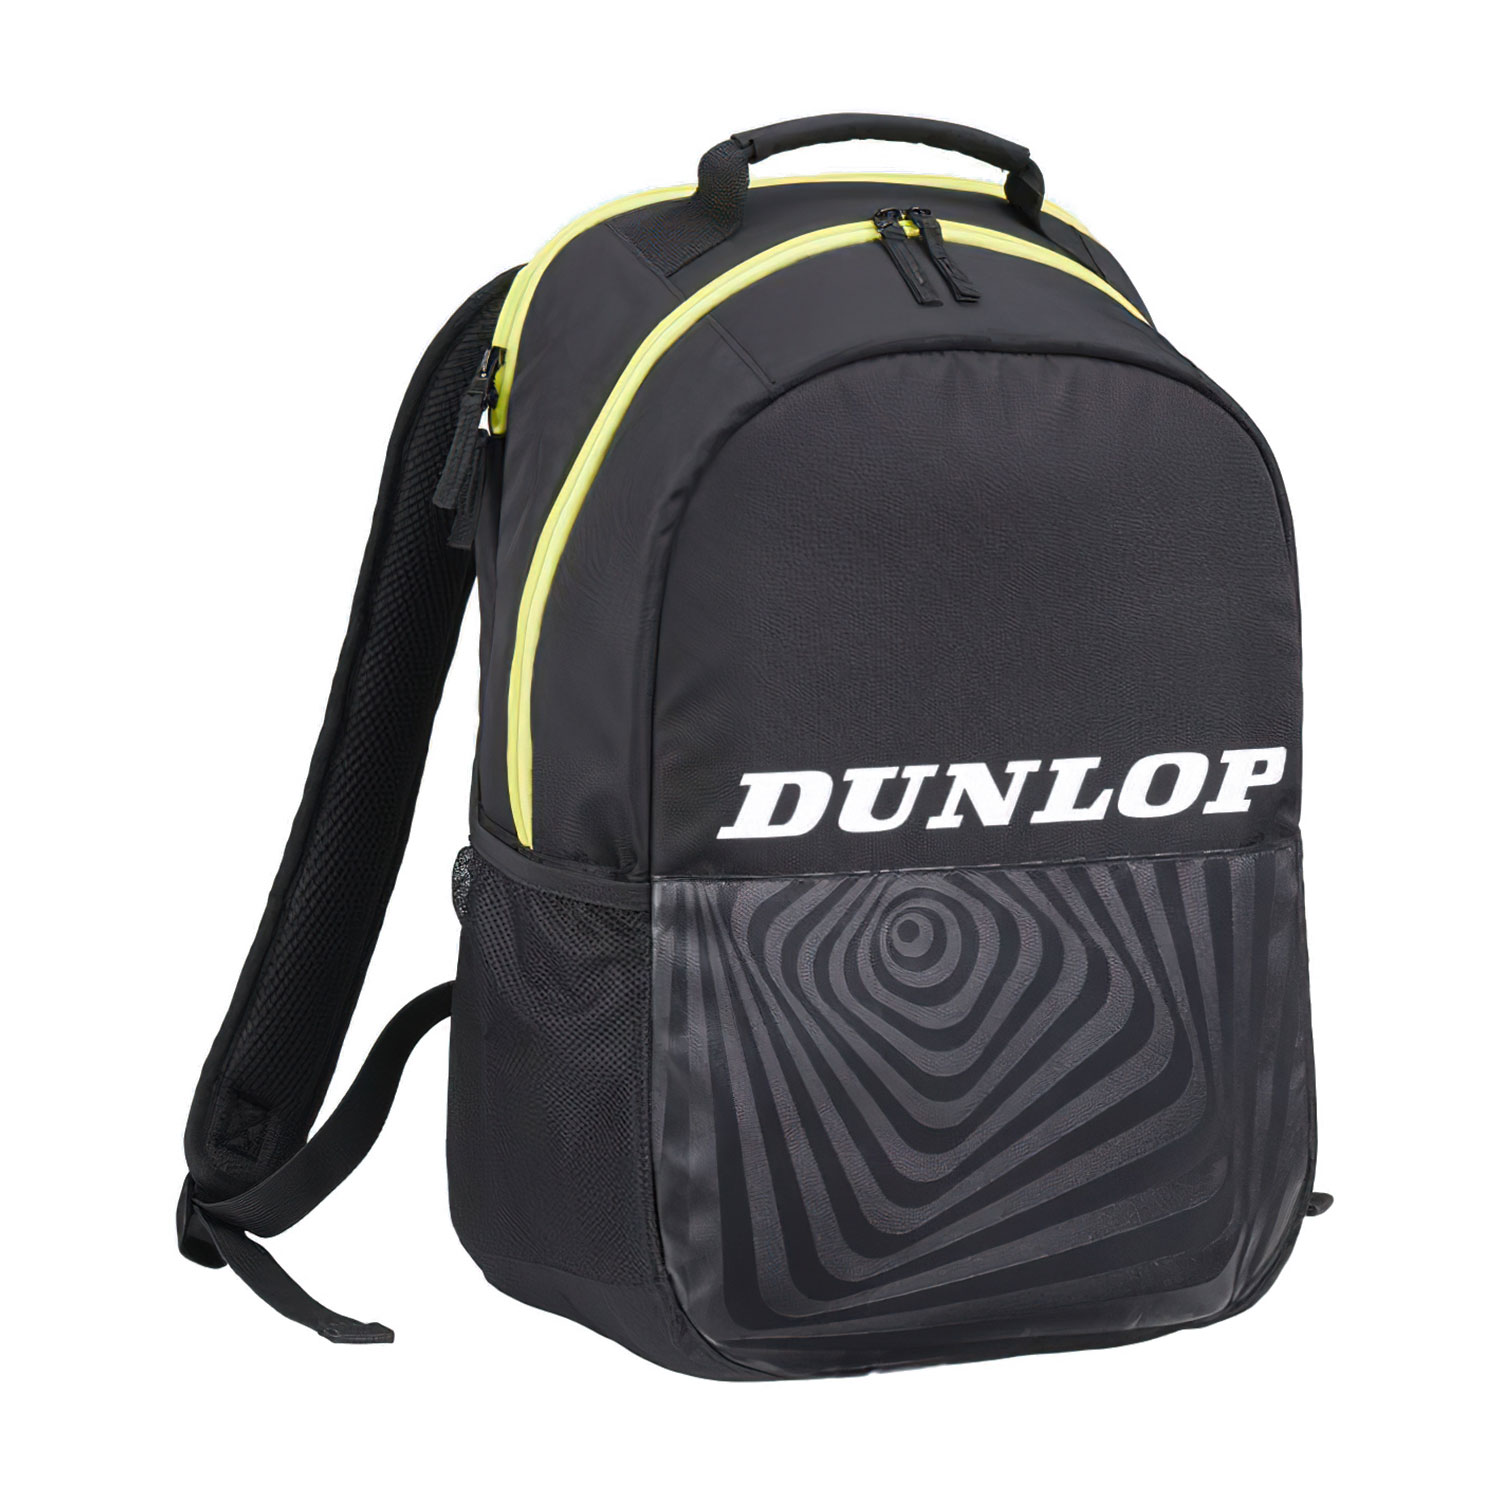 Dunlop SX Club Zaino - Black/Yellow